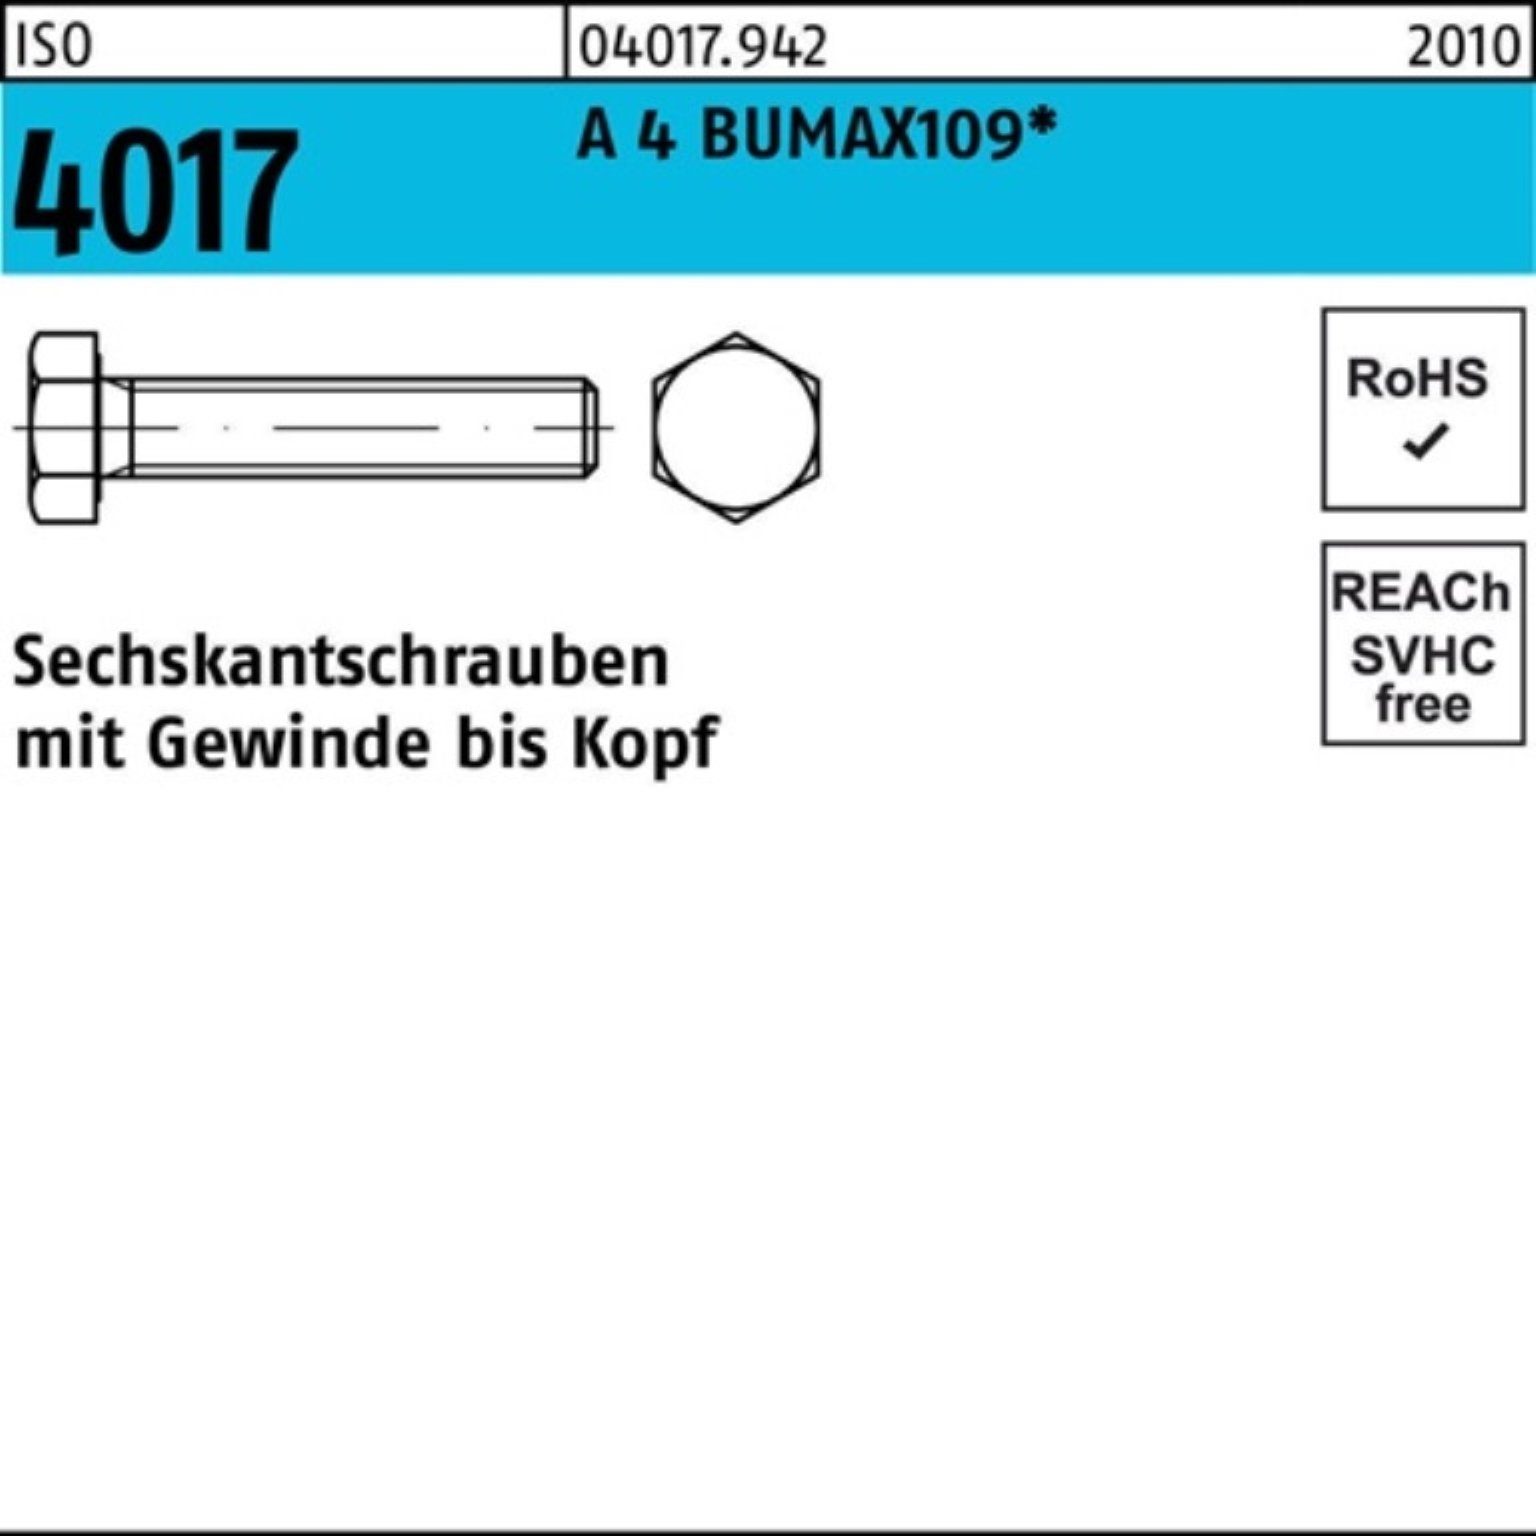 Bufab Sechskantschraube 100er Pack Sechskantschraube ISO 4017 VG M6x 16 A 4 BUMAX109 100 Stüc